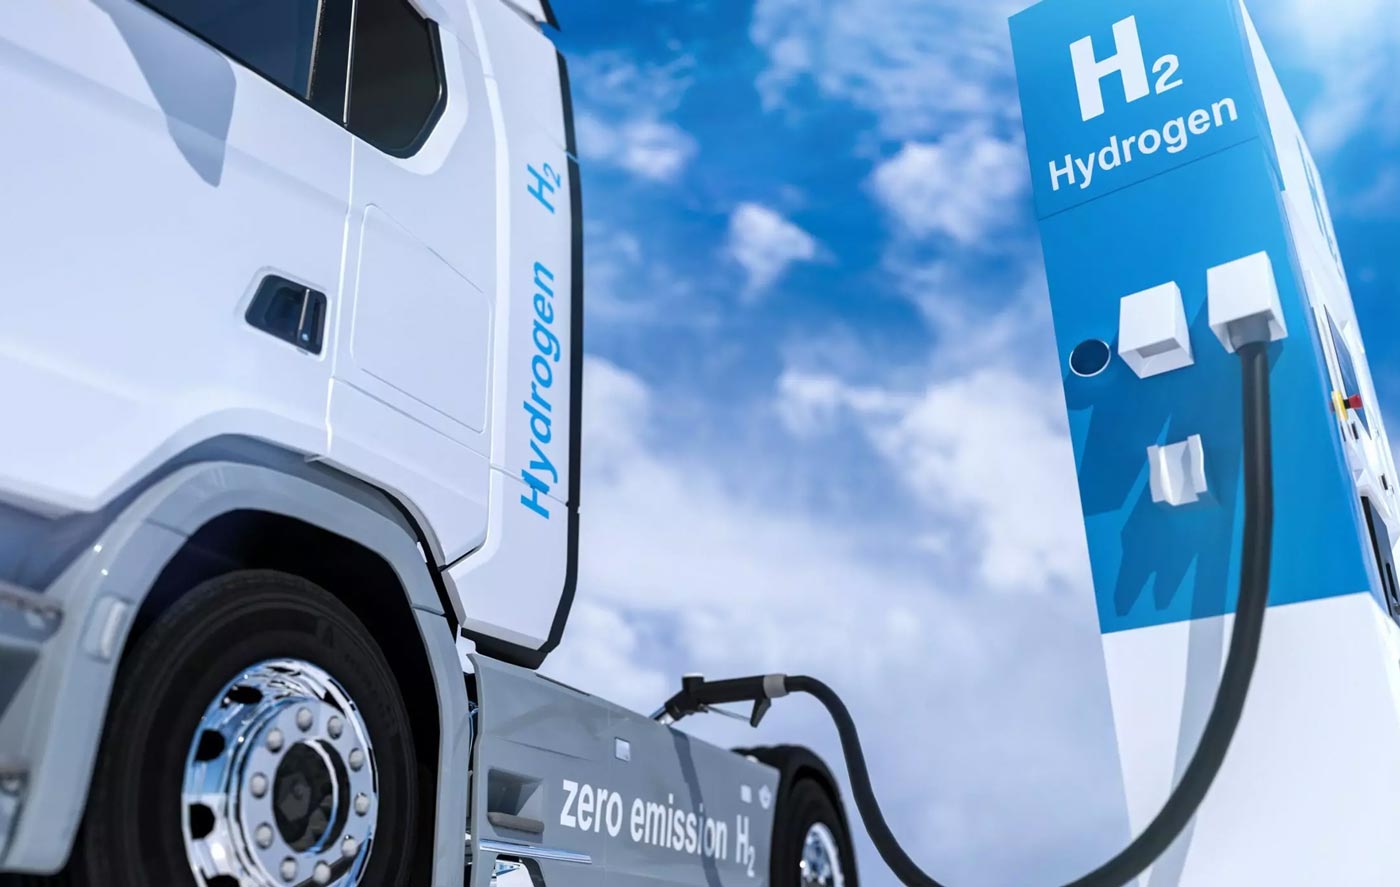 Camions électriques ou hydrogène : le Royaume-Uni veut comparer les deux solutions